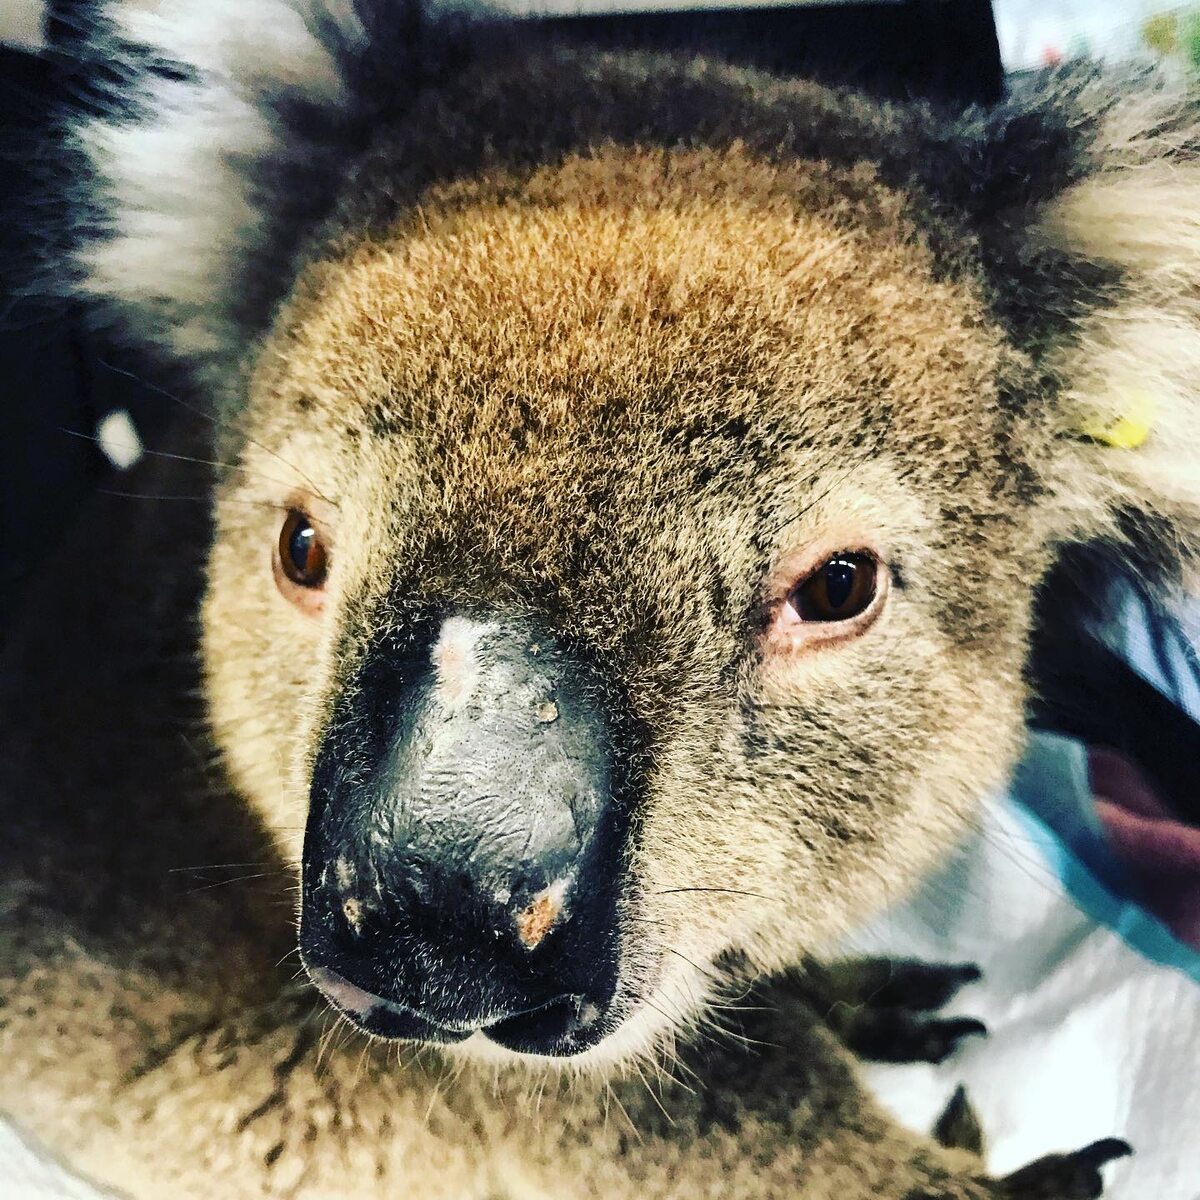 Miś koala uratowany przez wolontariuszy 